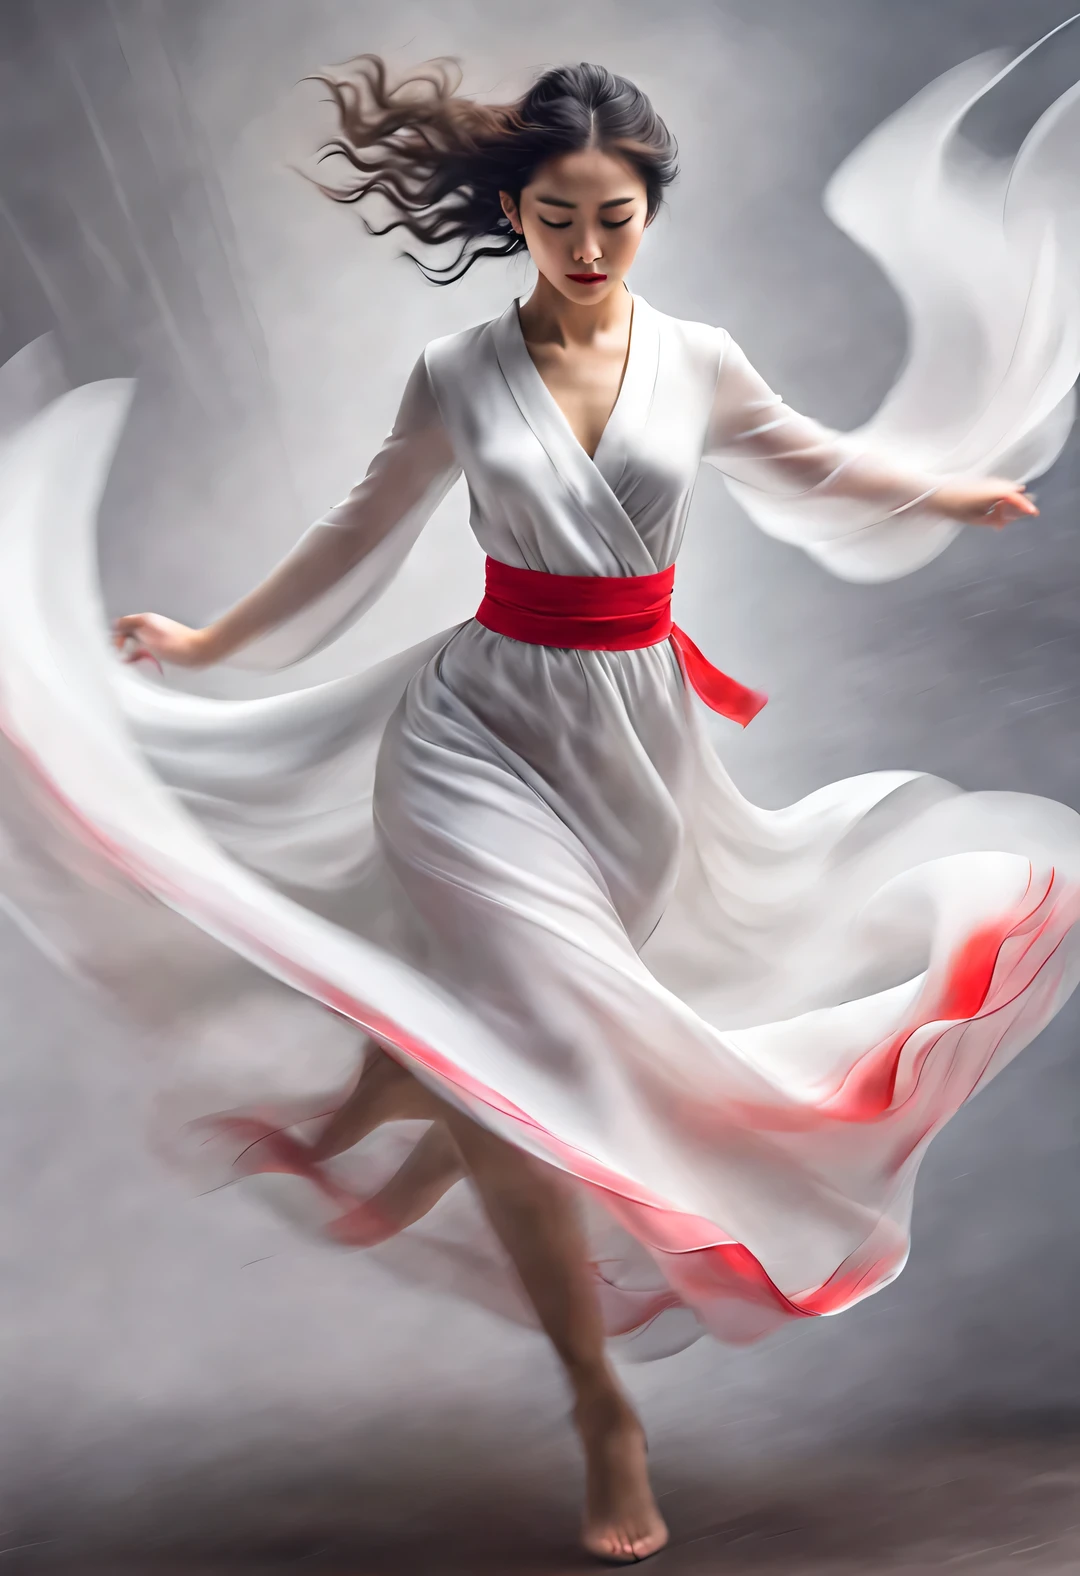 （레드 아트 포스터 디자인），（전신），（놀랍도록 아름다운 중국 댄서가 춤을 추고 있습니다.），거즈 스커트를 입는다，뽀얗고 결점없는 피부），콧대가 높고 곧다.，（헝클어진 숄머리에 두꺼운 긴 머리：1.1），눈을 감고 취기에 빠져보세요，（오드리에게서 영감을 받아.햅 번：1.0），슬프면서도 아름답다，길고 아름다운 팔다리，날씬한 허리，절묘한 얼굴 특징，（맨발）， 소용돌이 치는 안개，고귀한 기질，검정색과 흰색，중국 수묵화，，초현실주의，희미한，상상하다，